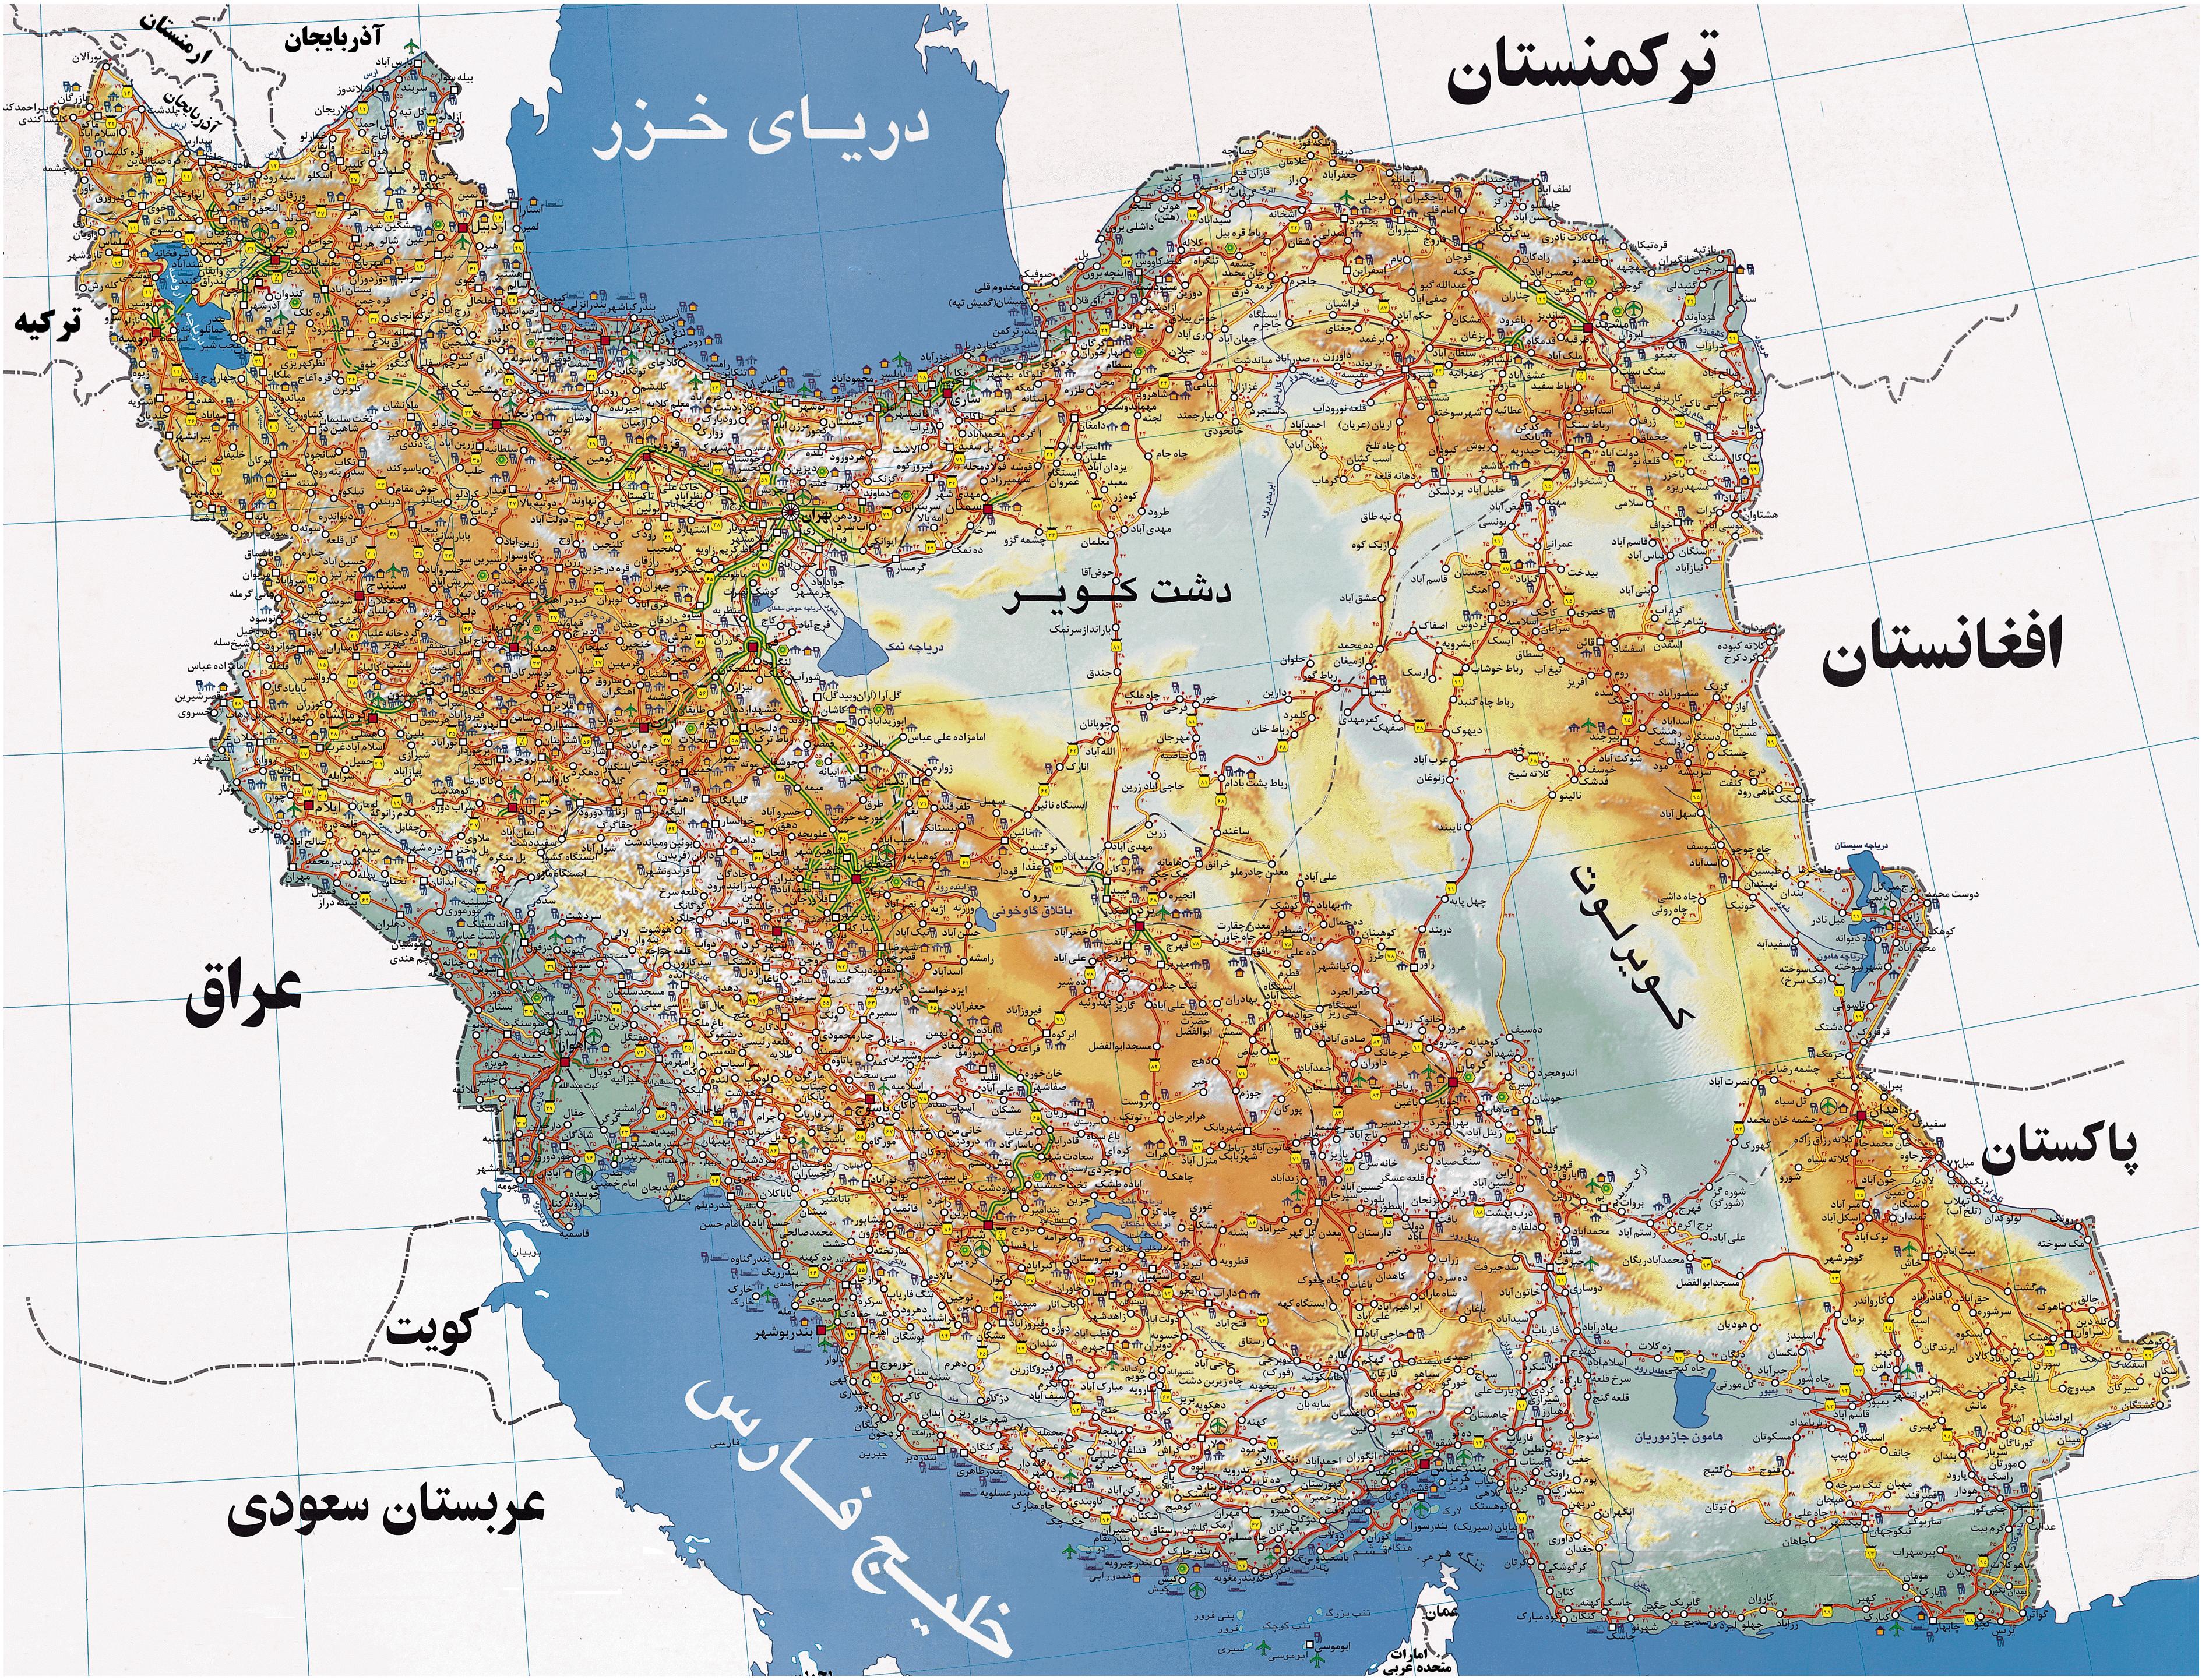 دانلود عکس نقشه ی ایران با کیفیت بالا
